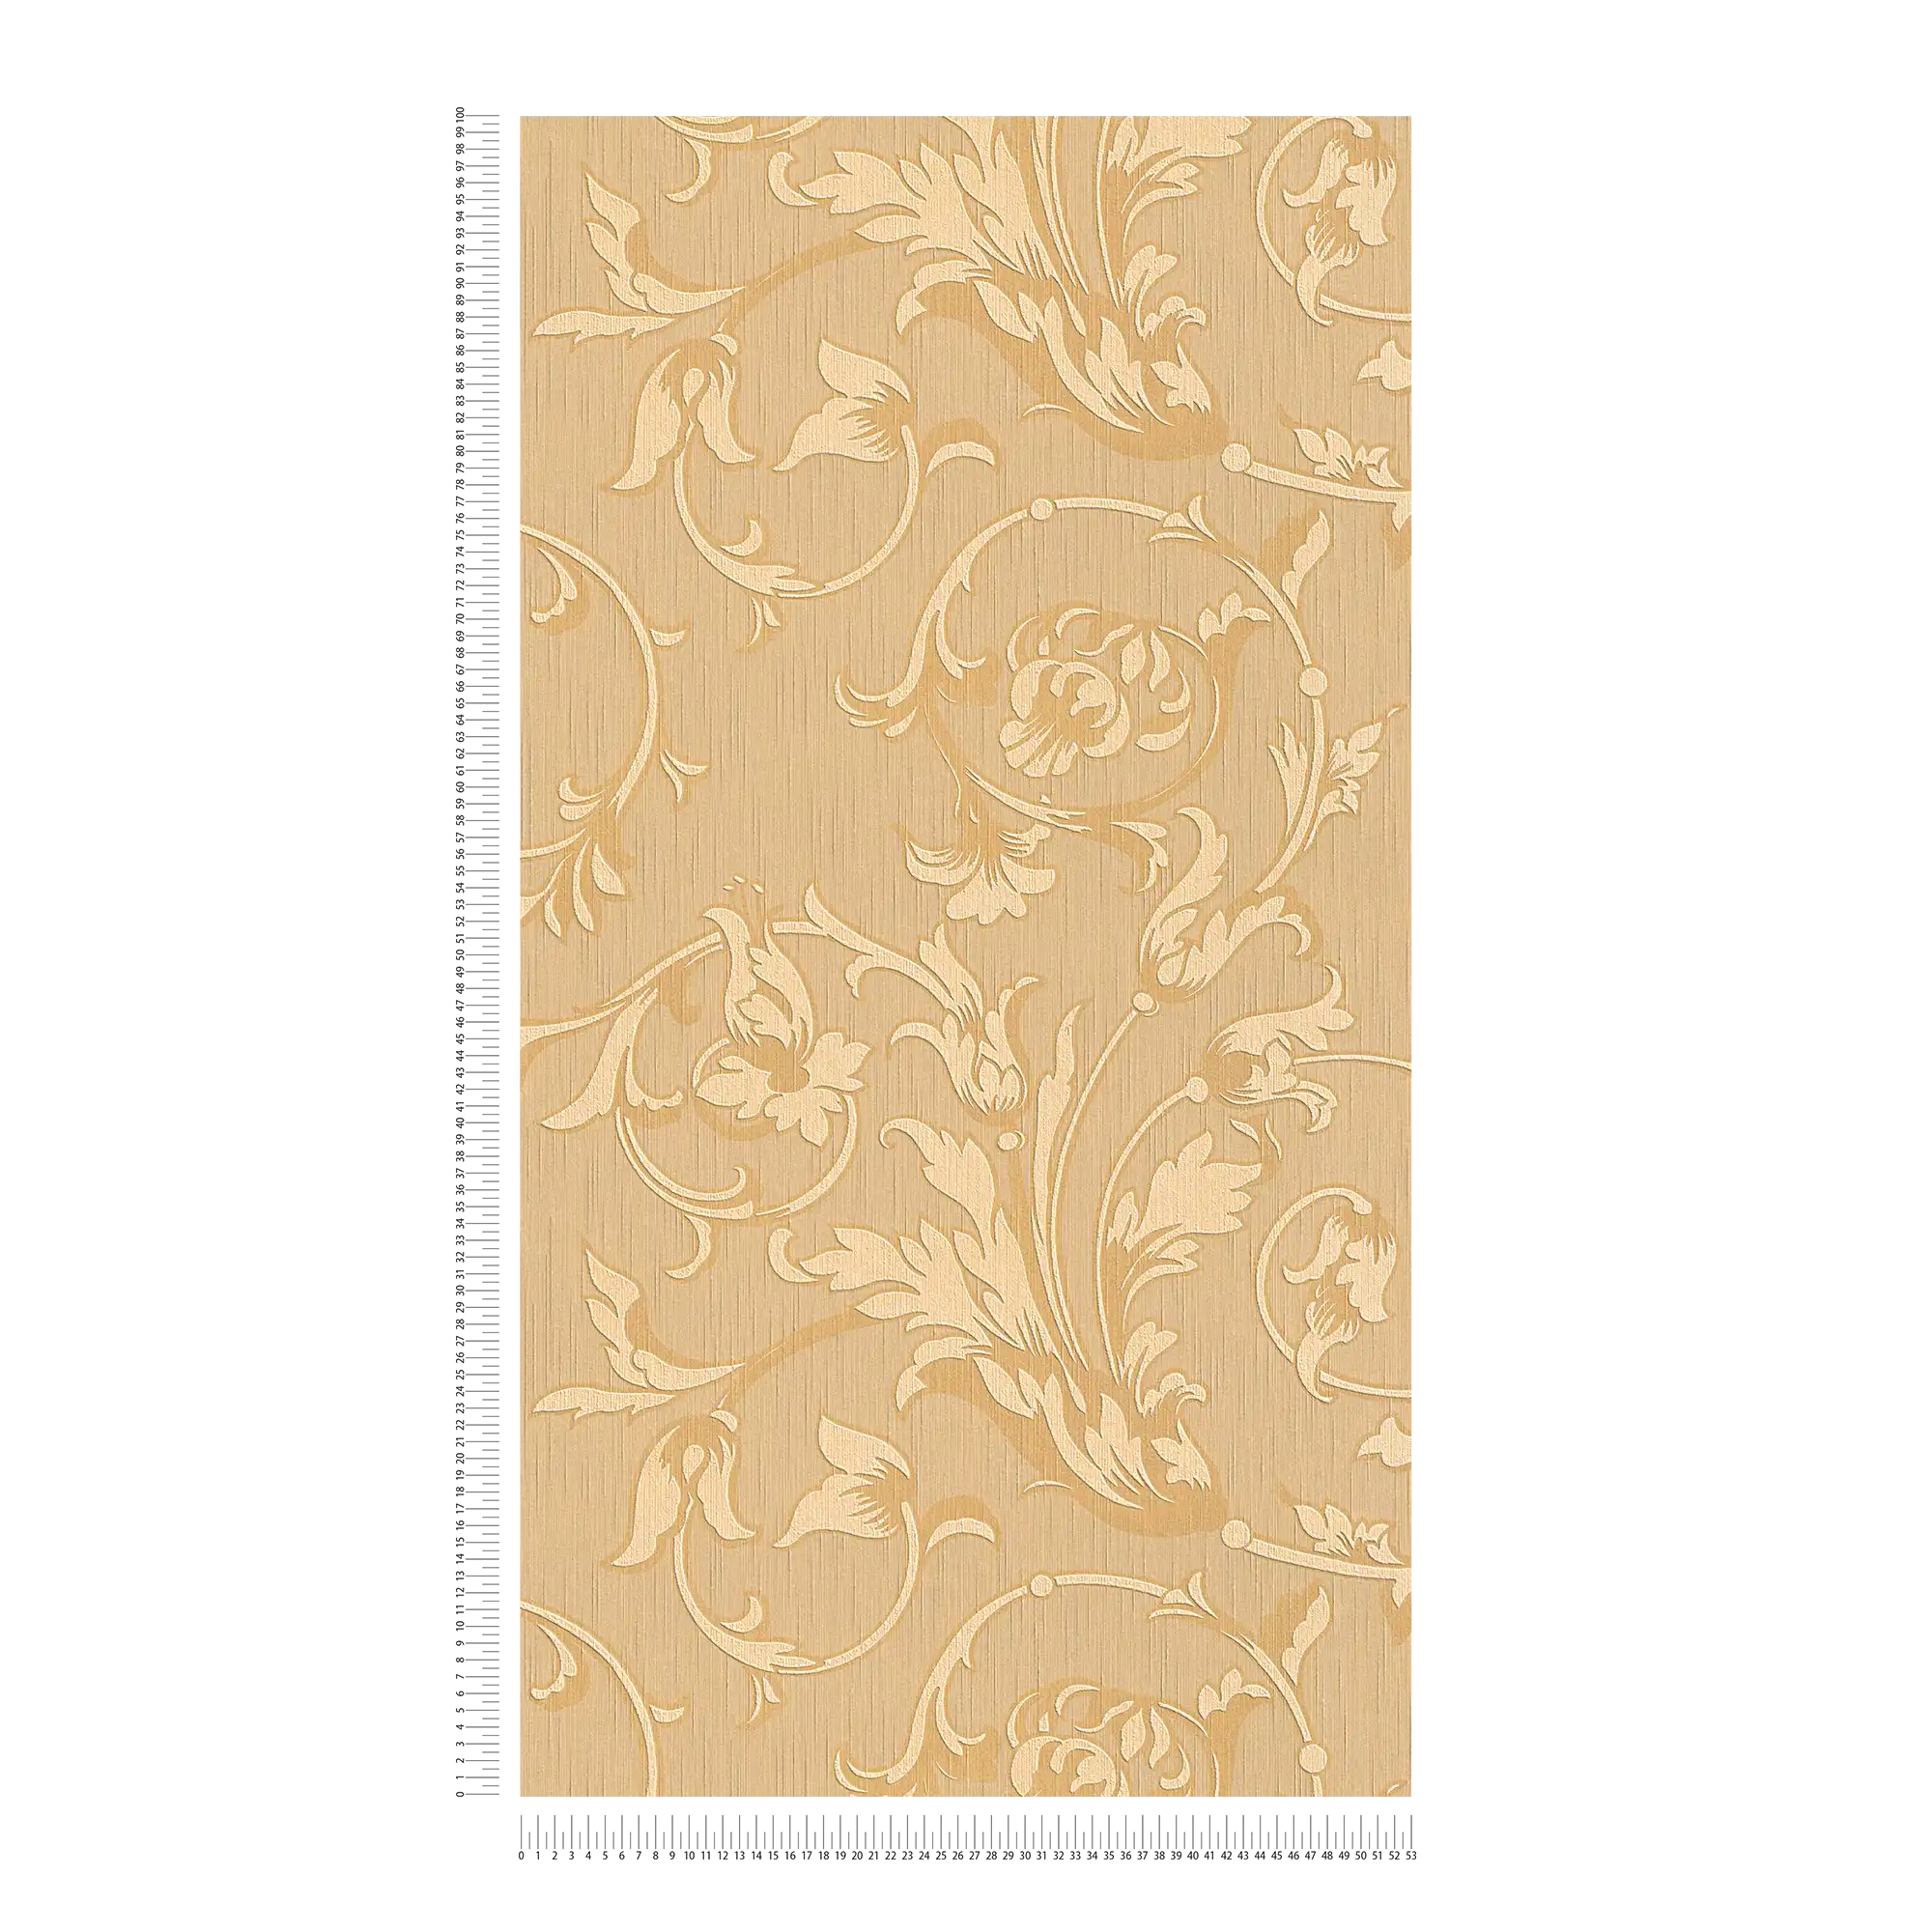             papier peint en papier baroque avec ornements Soie aspect textile - orange, beige
        